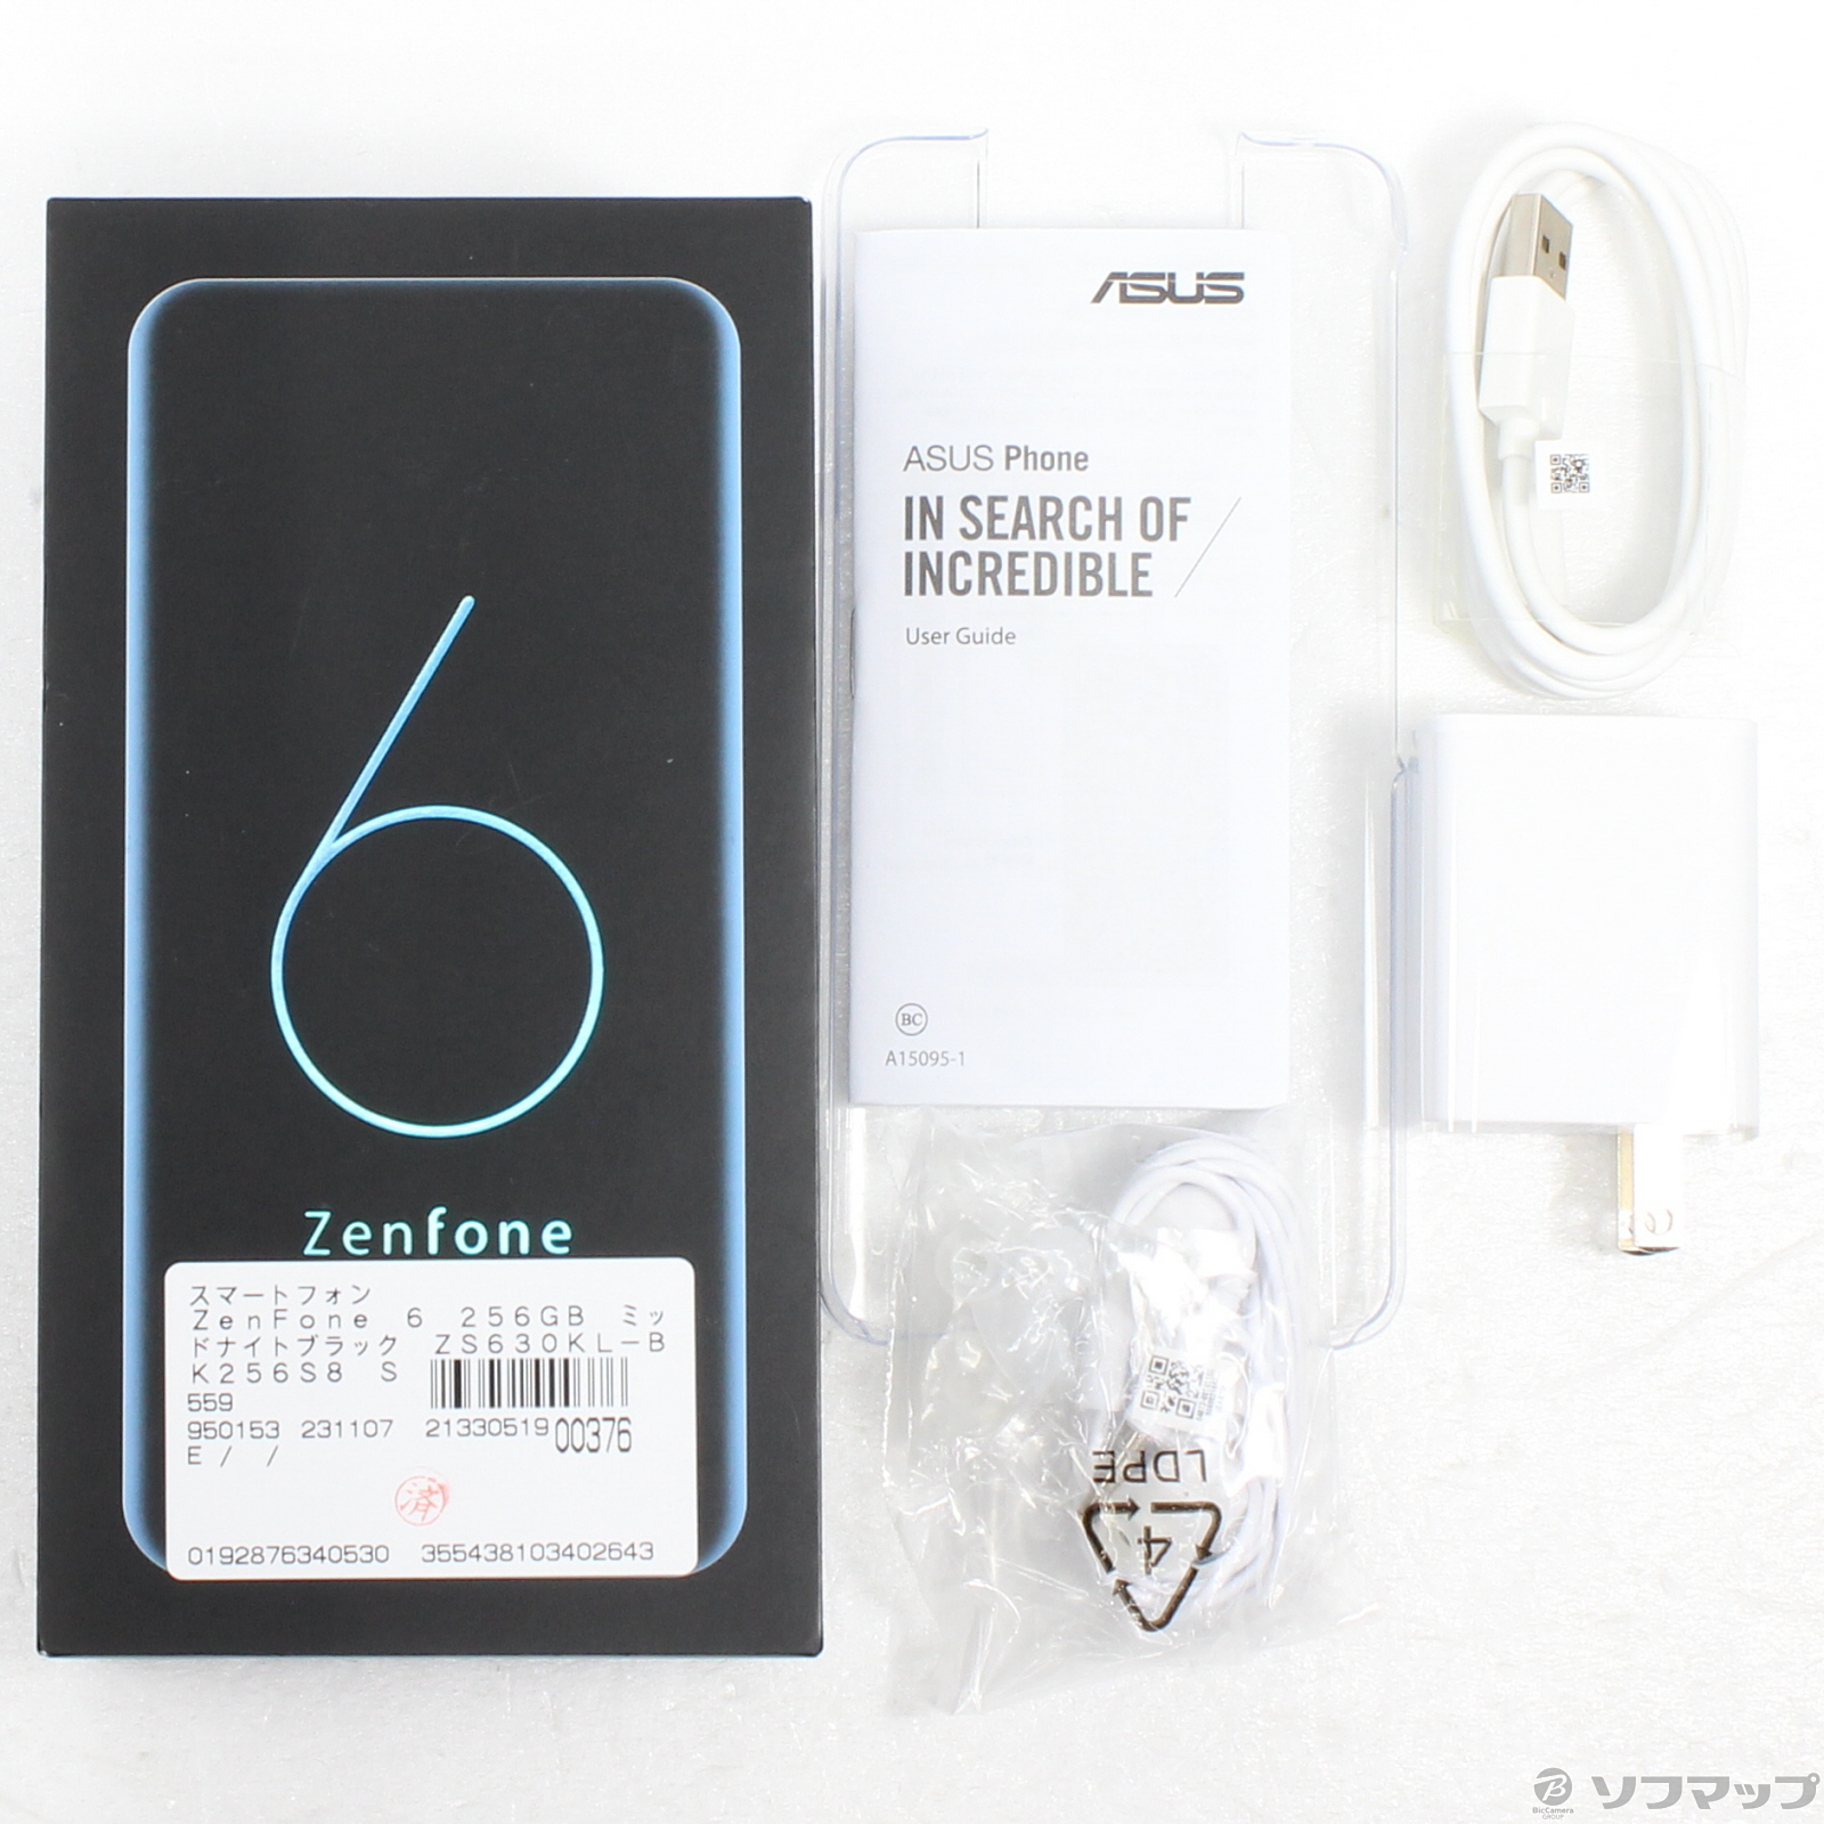 中古】ZenFone 6 256GB ミッドナイトブラック ZS630KL-BK256S8 SIM